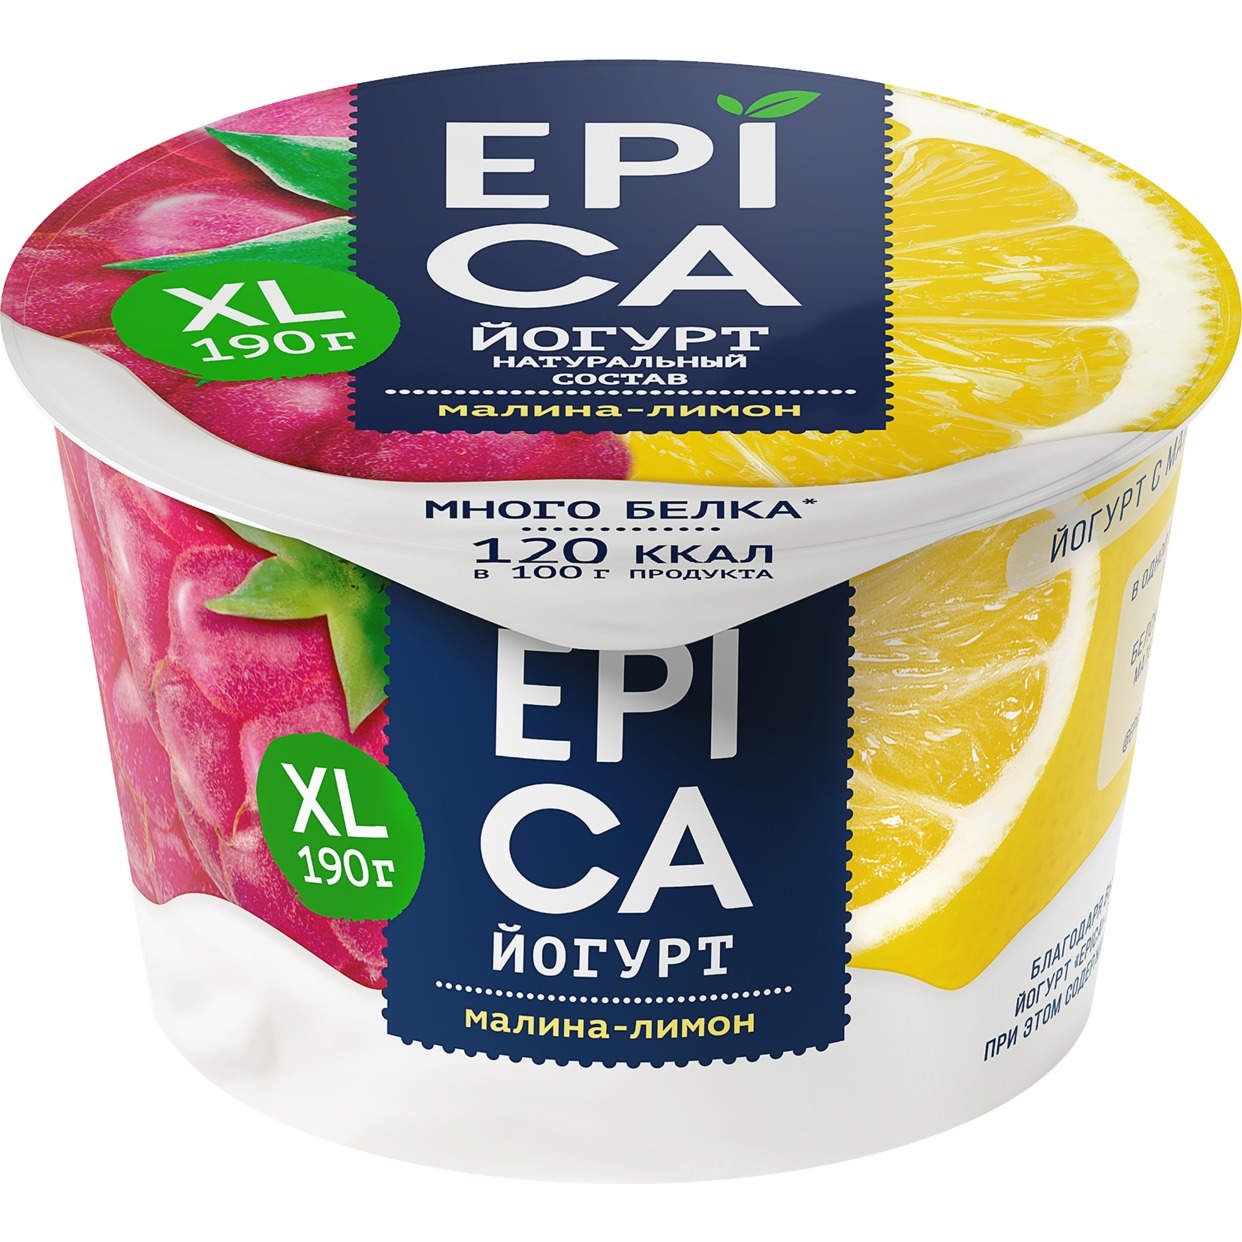 БЗМЖ Йогурт с малиной и лимоном «ЕPICA» Массовая доля жира 4,8% 190г по акции в Пятерочке